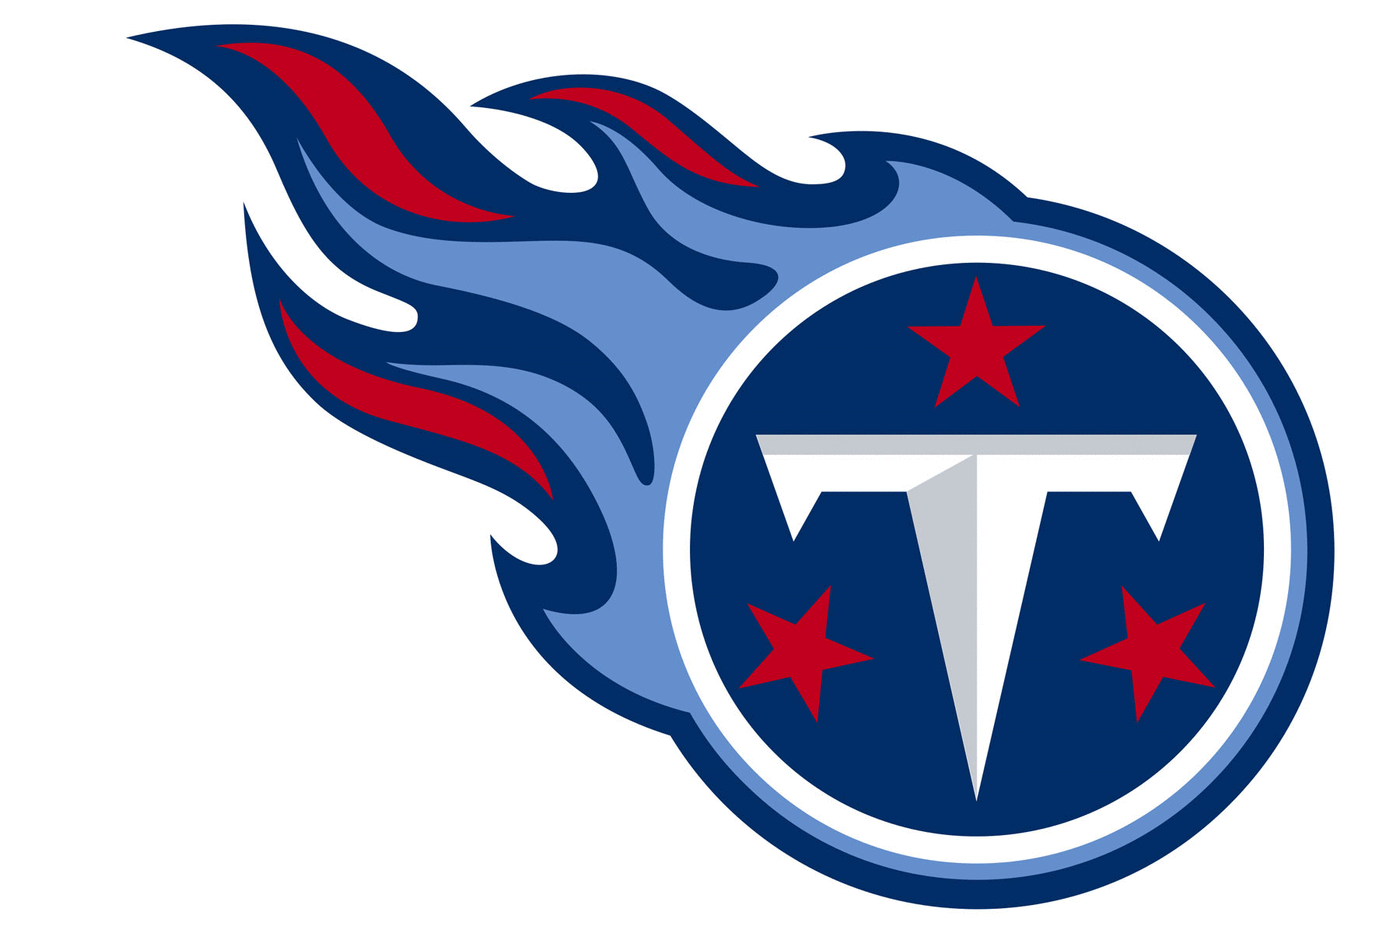 Tennessee Titans Football Helmet